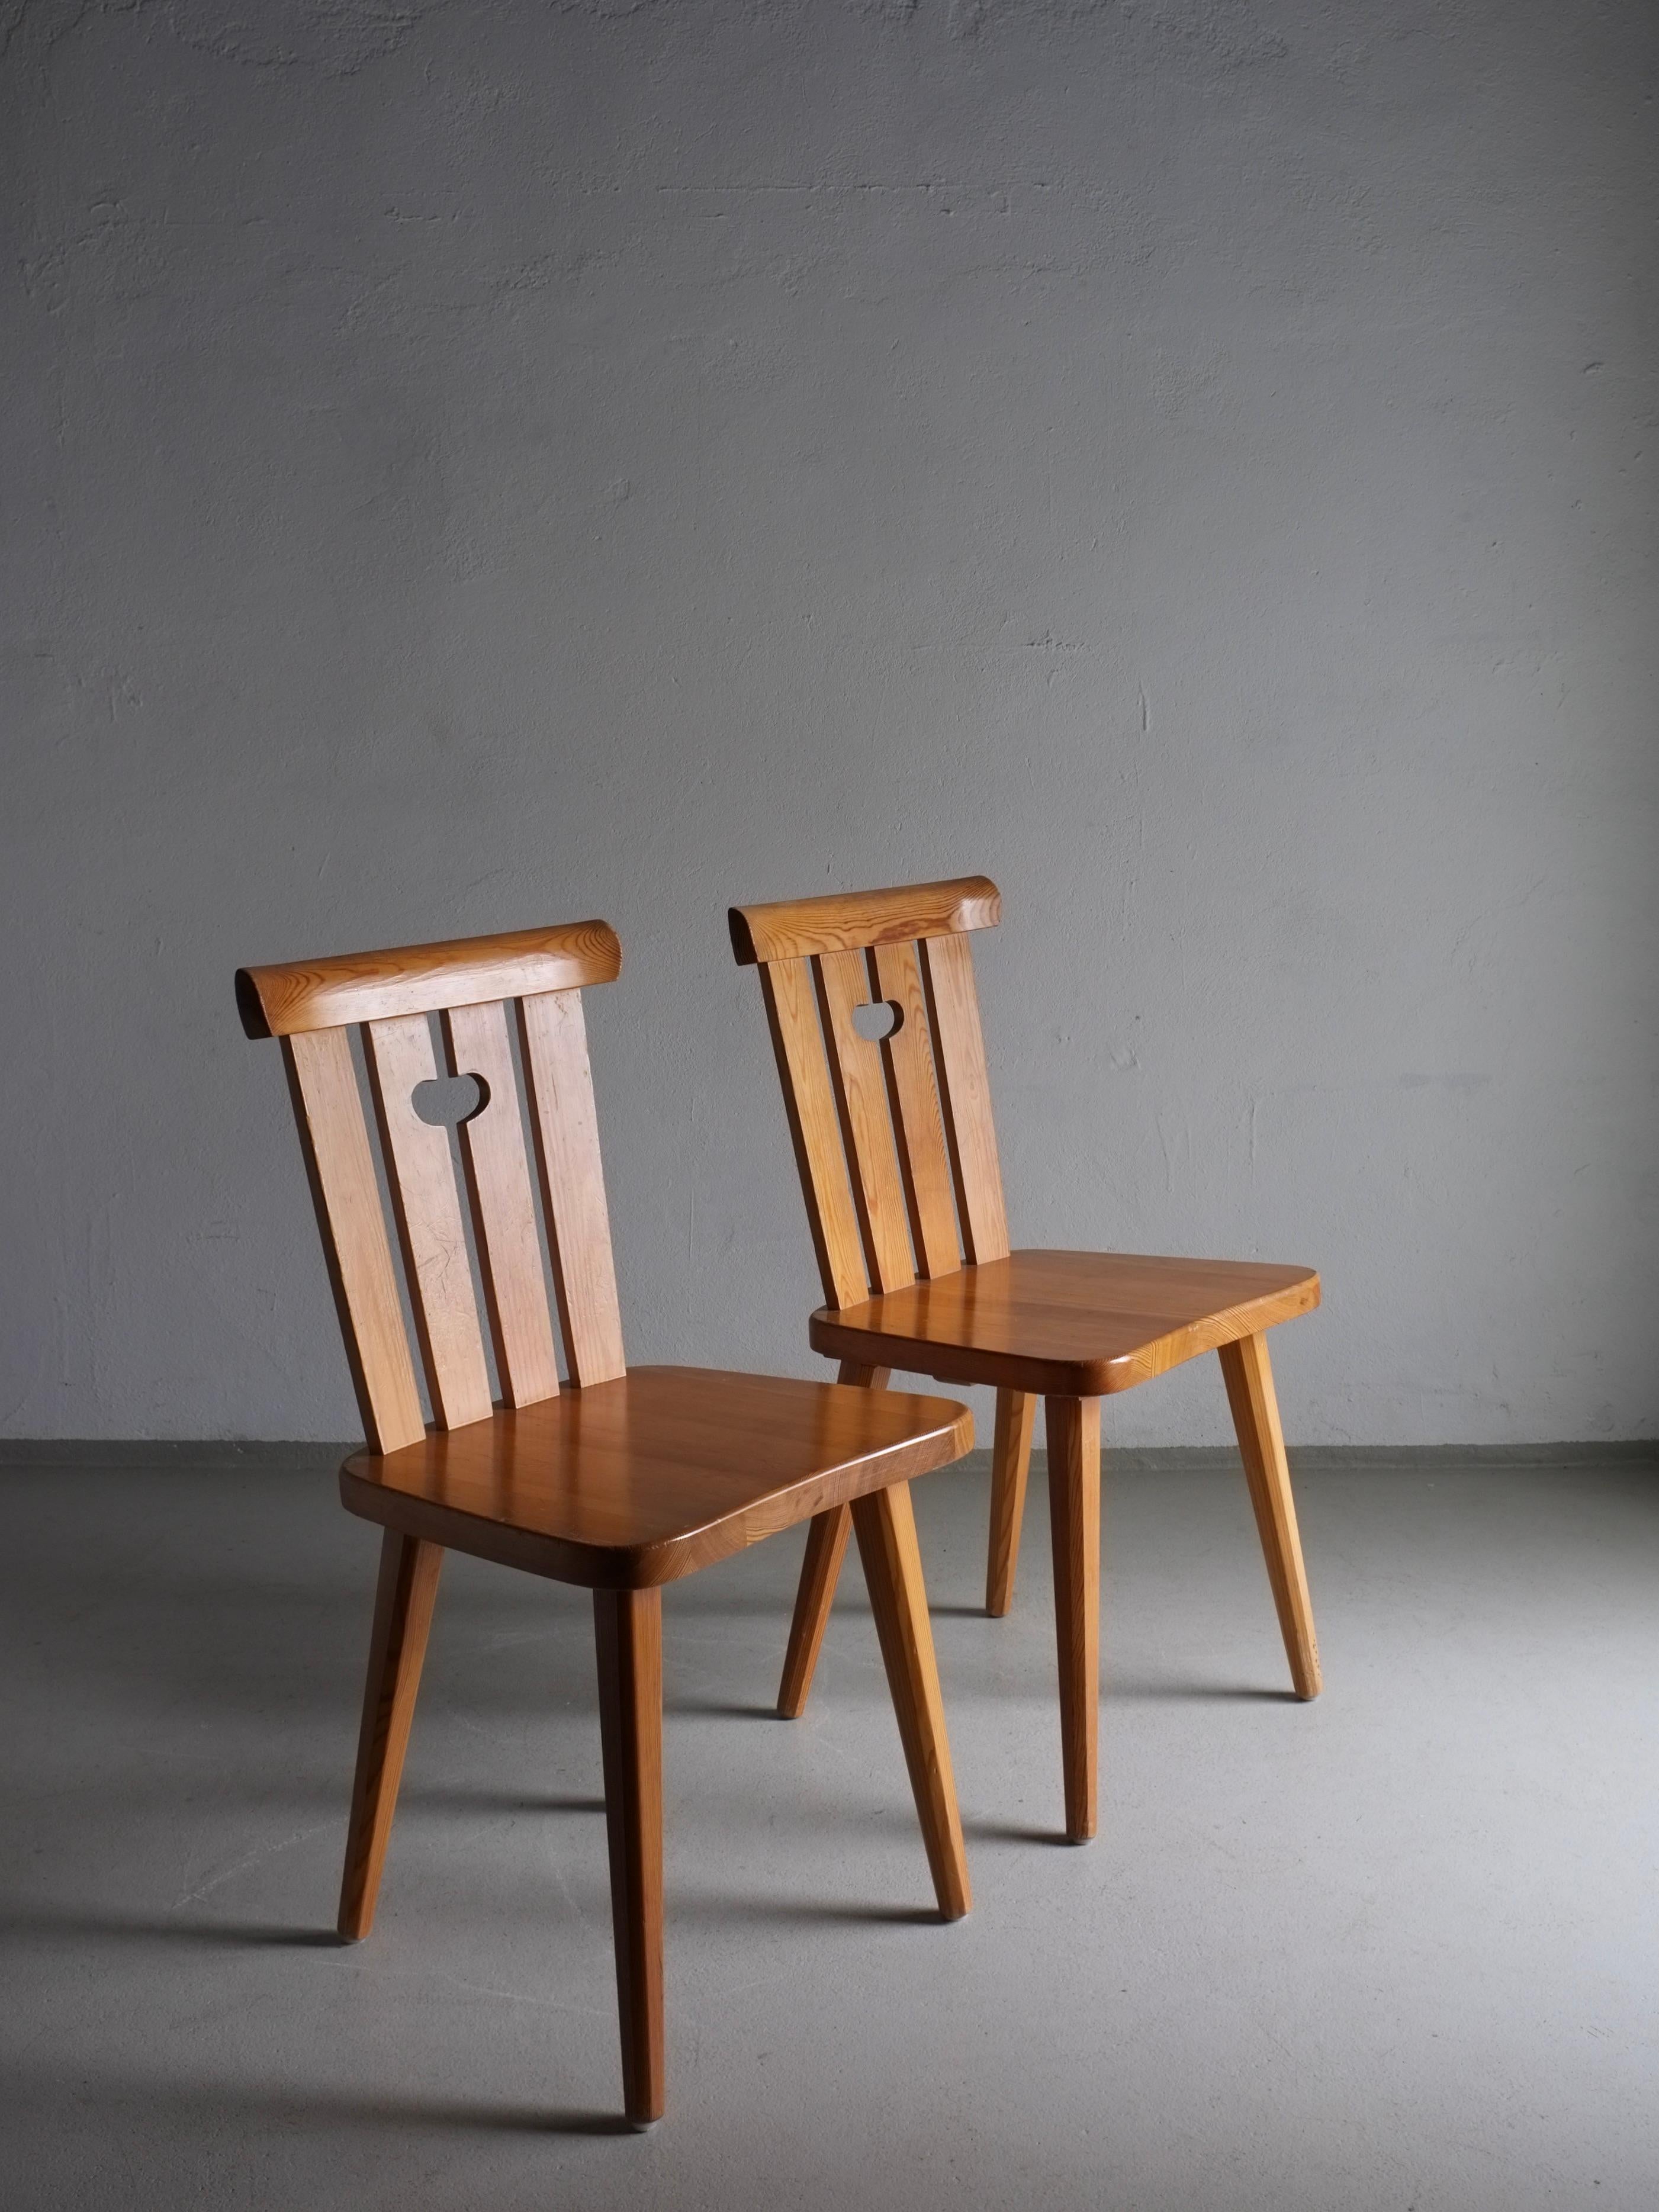 2 Stühle aus massivem Kiefernholz, entworfen von Göran Malmvall in den 1940er Jahren. Vier weitere Stühle sind verfügbar, bitte fragen Sie nach.

Zusätzliche Informationen:
Land der Herstellung: Schweden
Zeitraum: 1940s
Abmessungen: B 43 cm x T 40